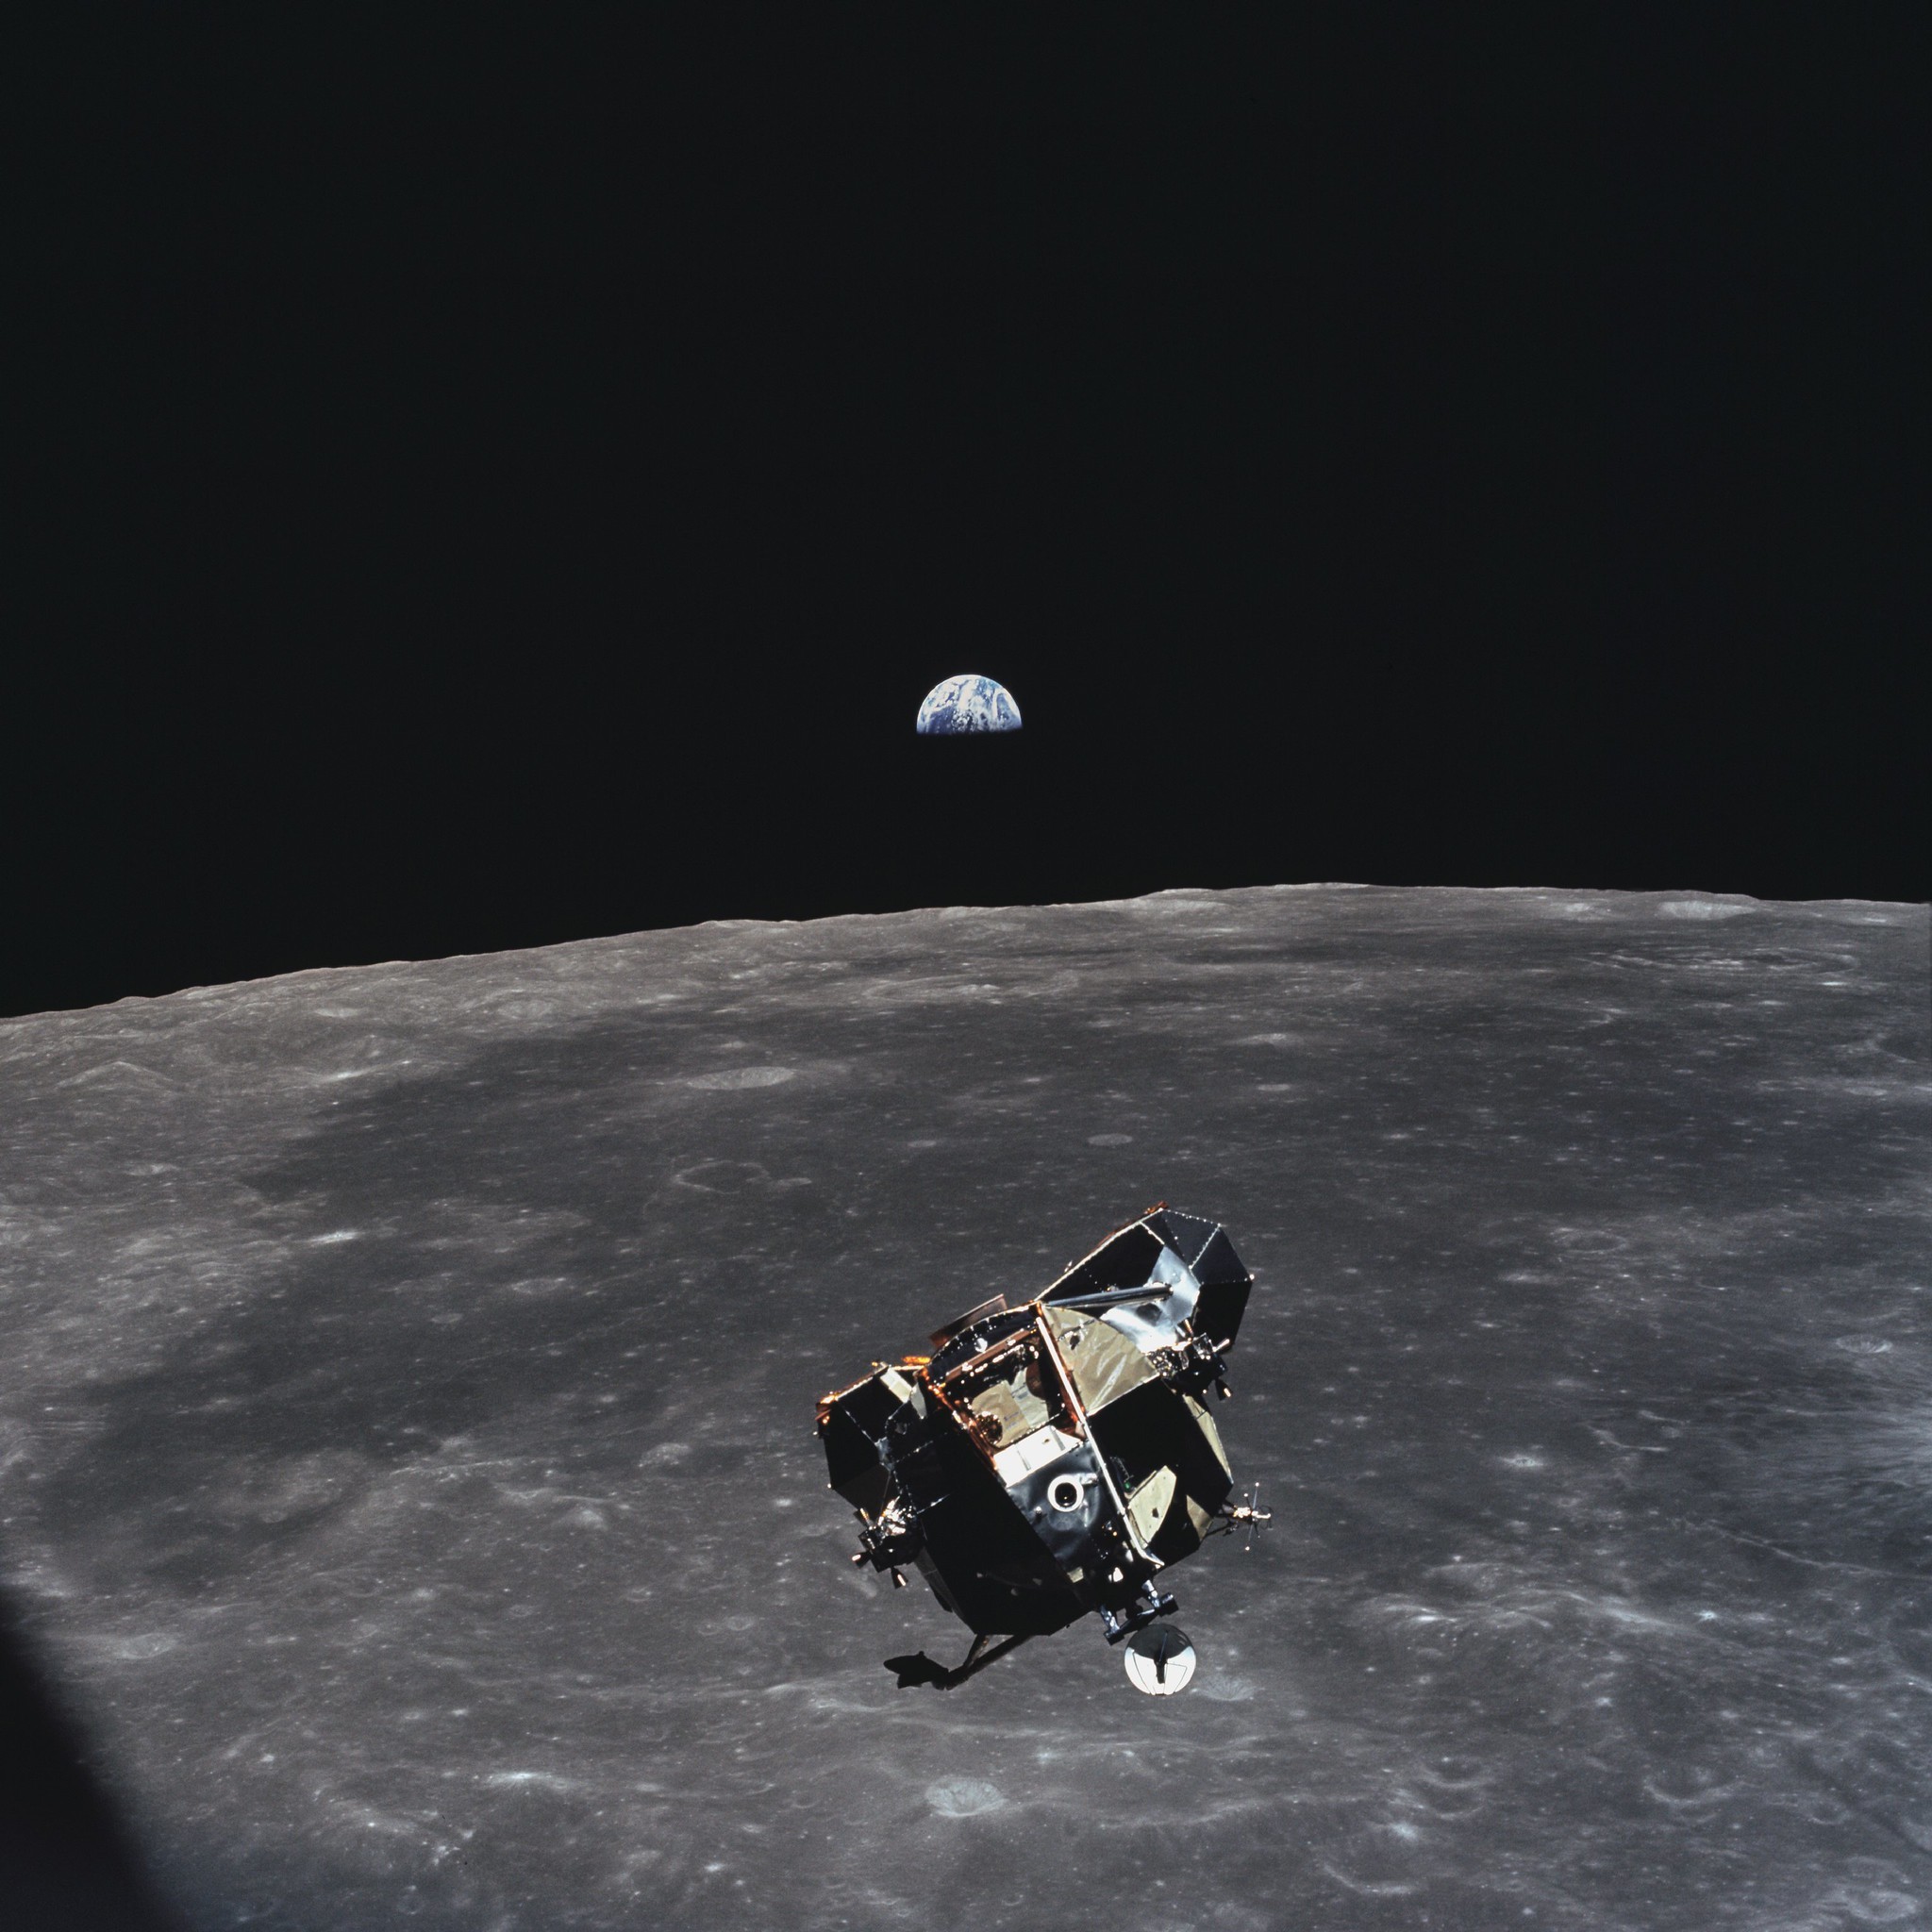 Module lunaire (LM) Apollo 11, rendez-vous en orbite lunaire, phase ascendante, Armstrong et Aldrin a bord, depuis CSM, Lune © NASA - as11-44-6642-21 Juillet 1969